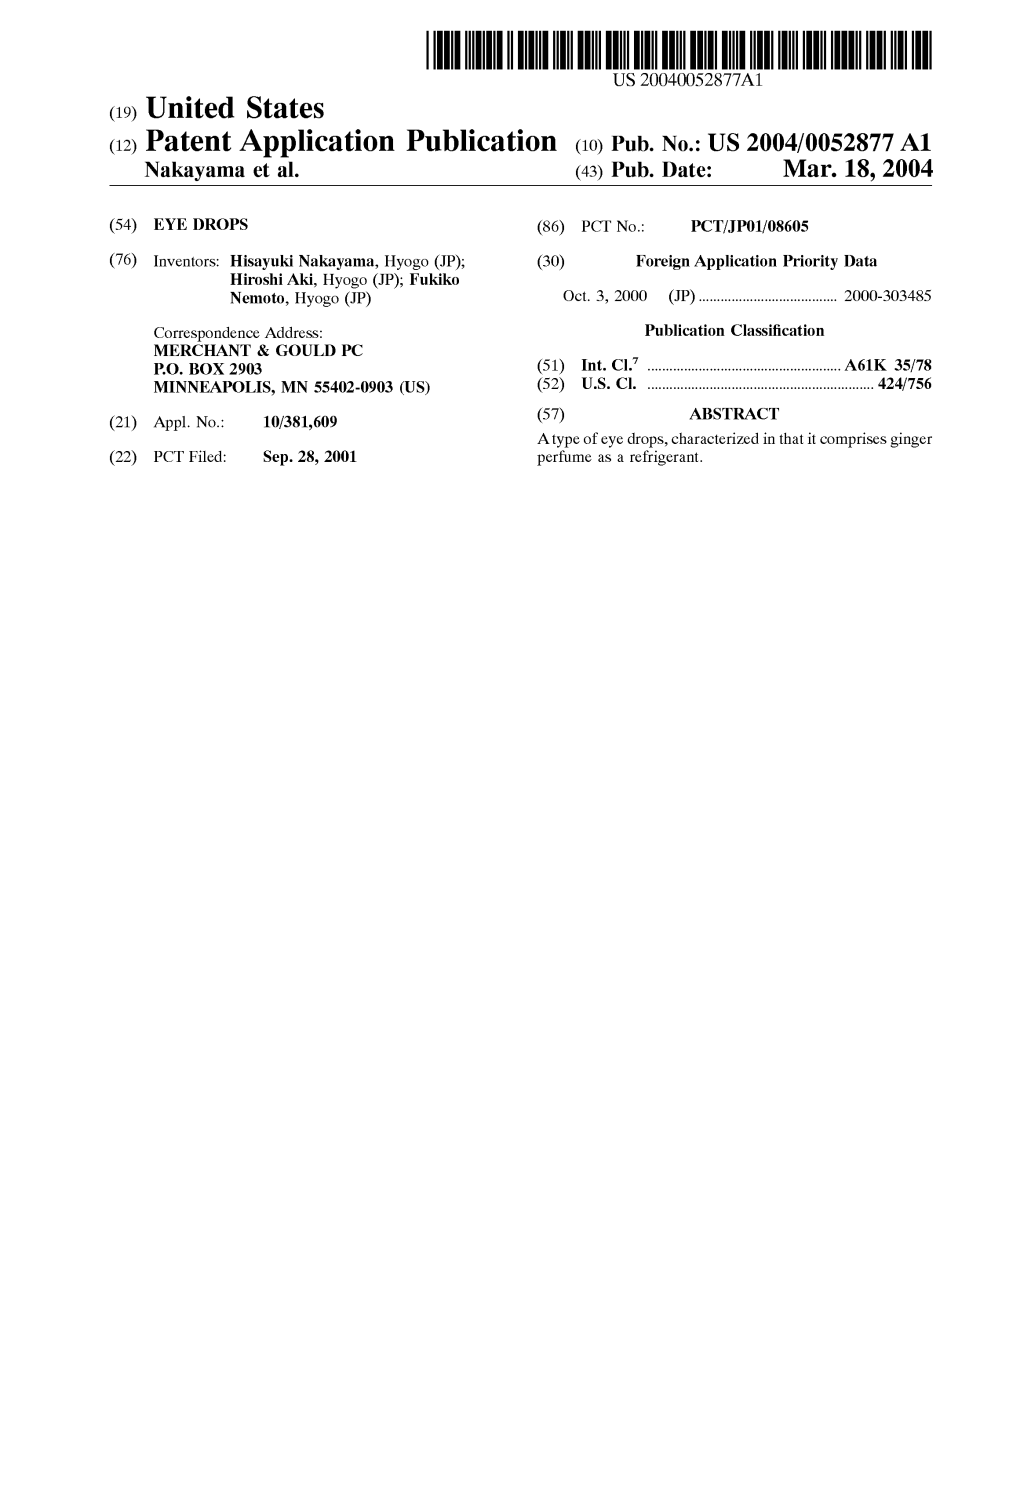 (12) Patent Application Publication (10) Pub. No.: US 2004/0052877 A1 Nakayama Et Al